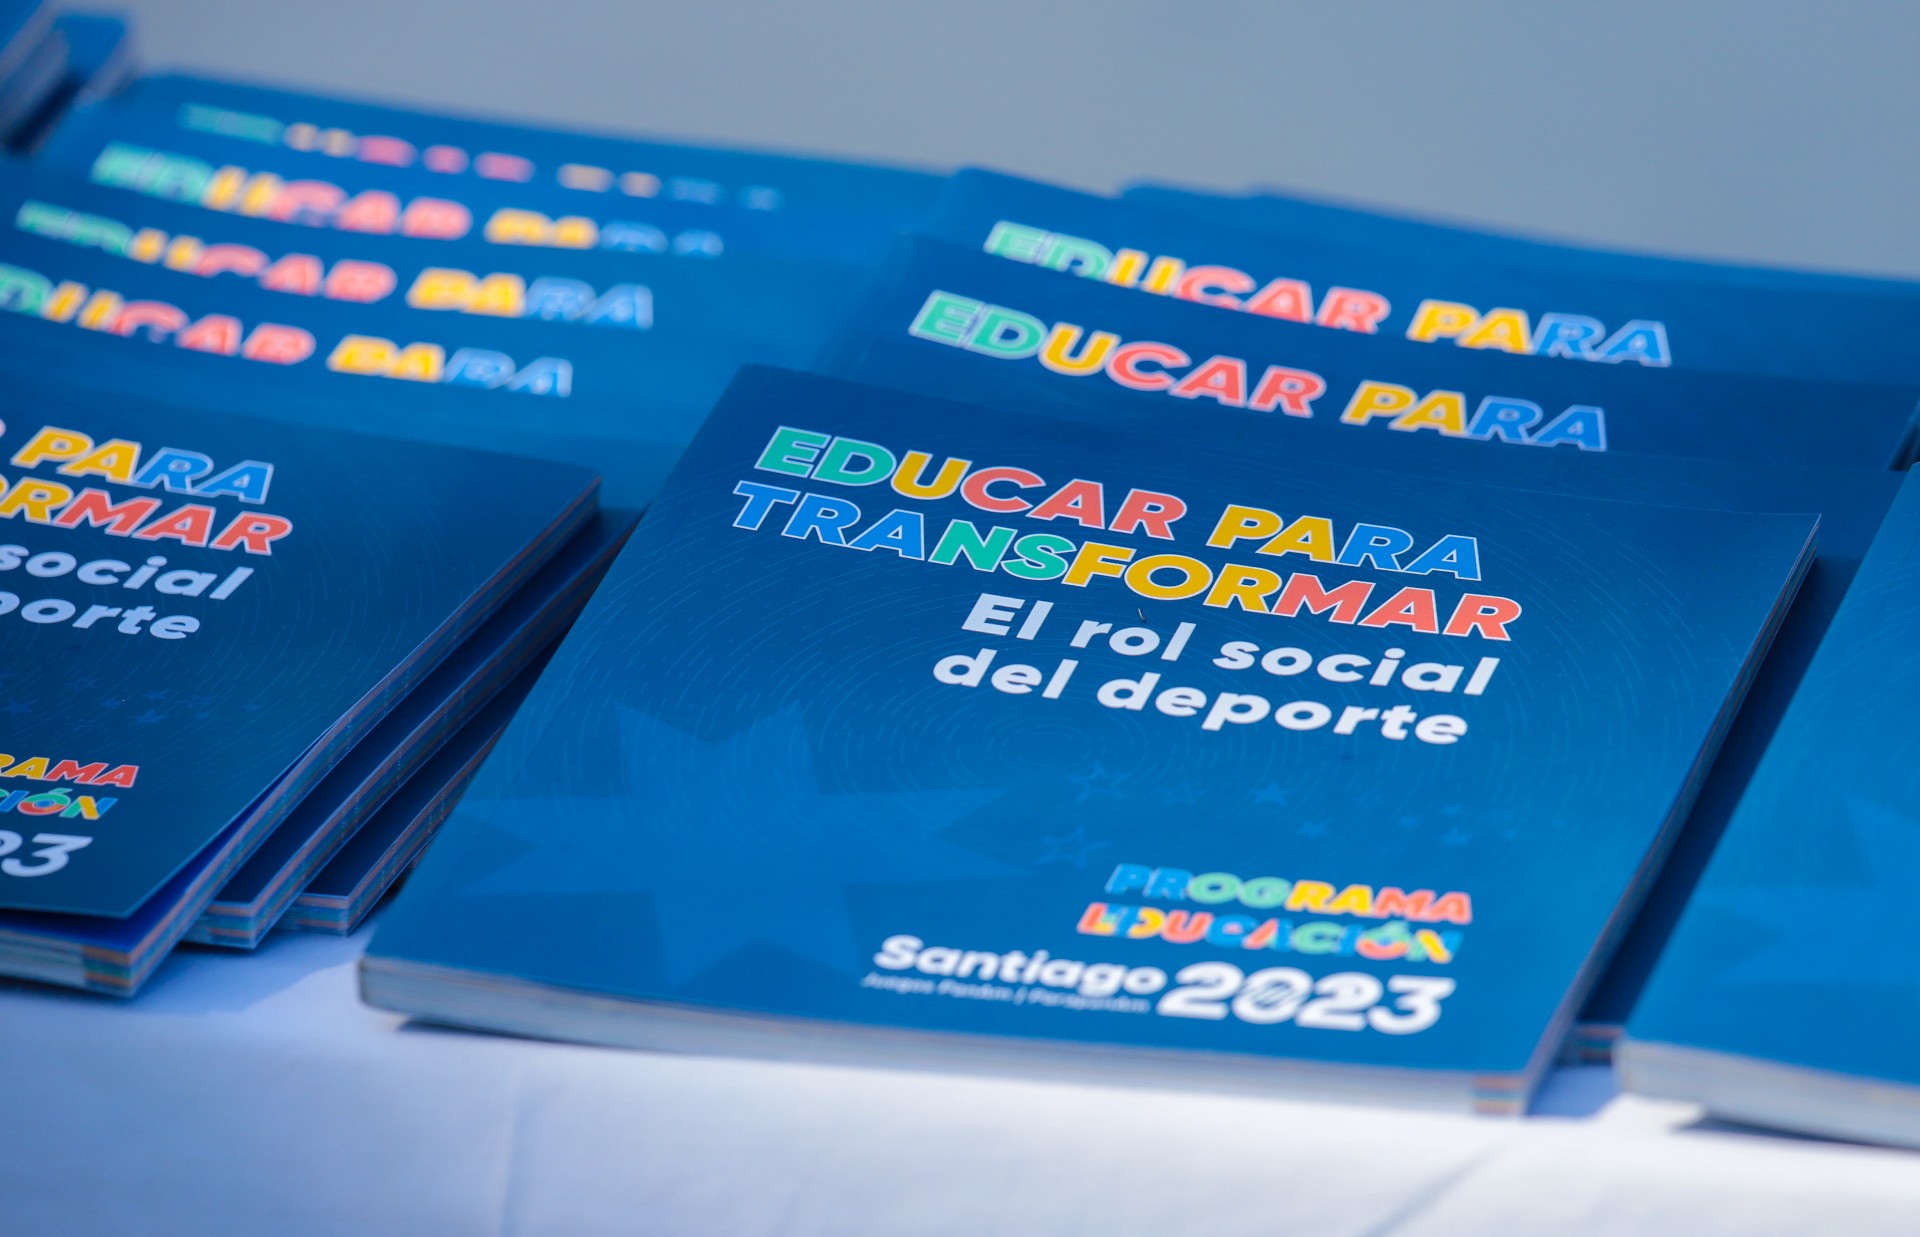 Corporación Santiago 2023 lanza el libro “Educar para transformar” 